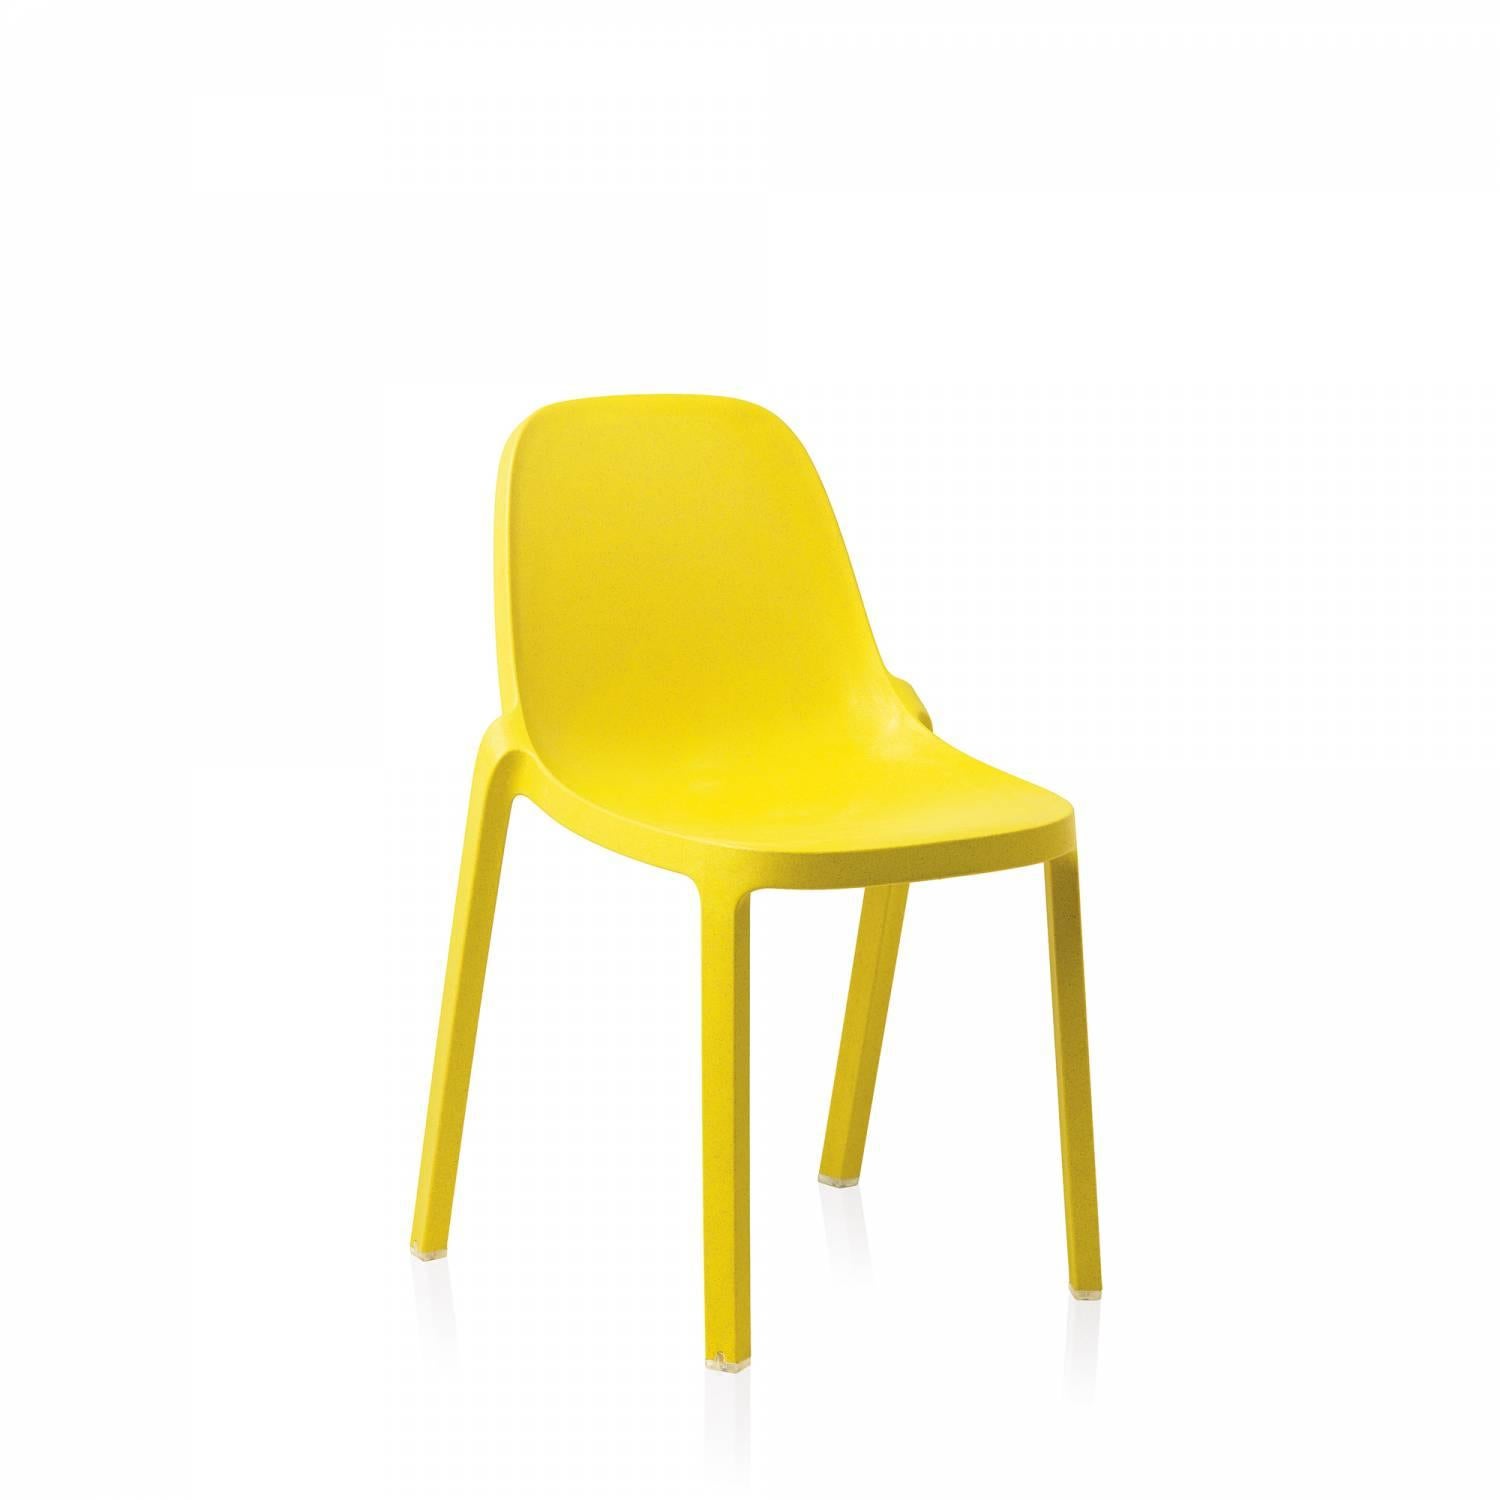 Philippe Starck et Emeco se sont associés pour créer une nouvelle chaise qui est récupérée, recyclée, recyclable et conçue pour durer. La chaise est fabriquée à partir de 75 % de polypropylène usagé et de 15 % de bois de récupération qui seraient